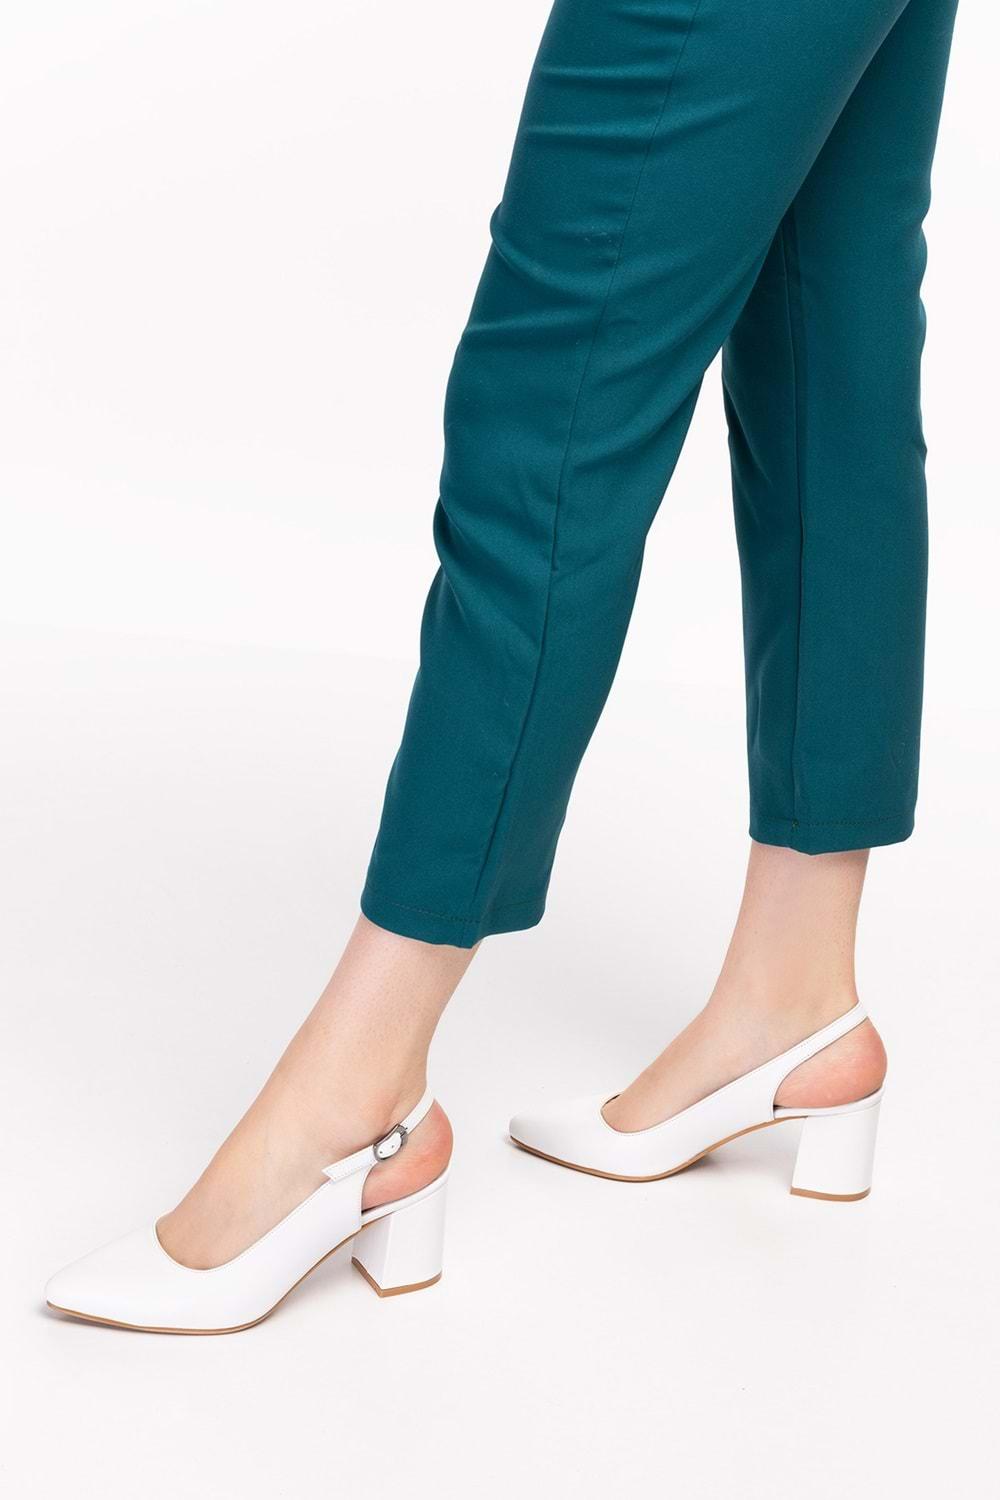 Gondol Kadın Hakiki Deri Klasik Topuklu Ayakkabı şhn.0034 - Beyaz - 36